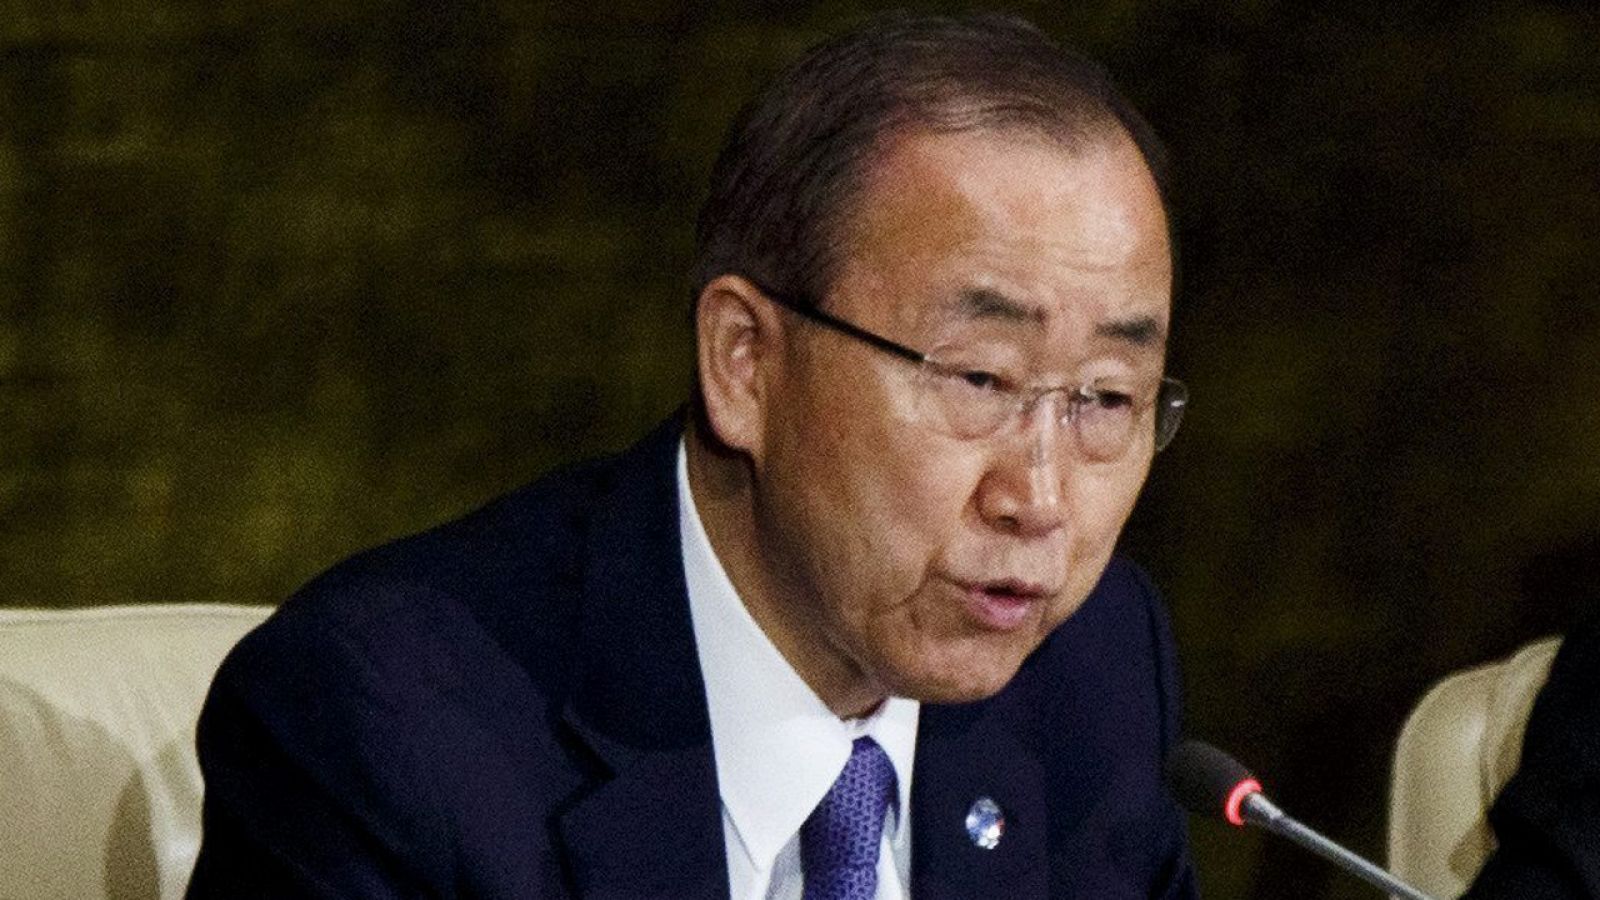 El secretario general de Naciones Unidas, Ban Ki-moon, fotografiado en Nueva York